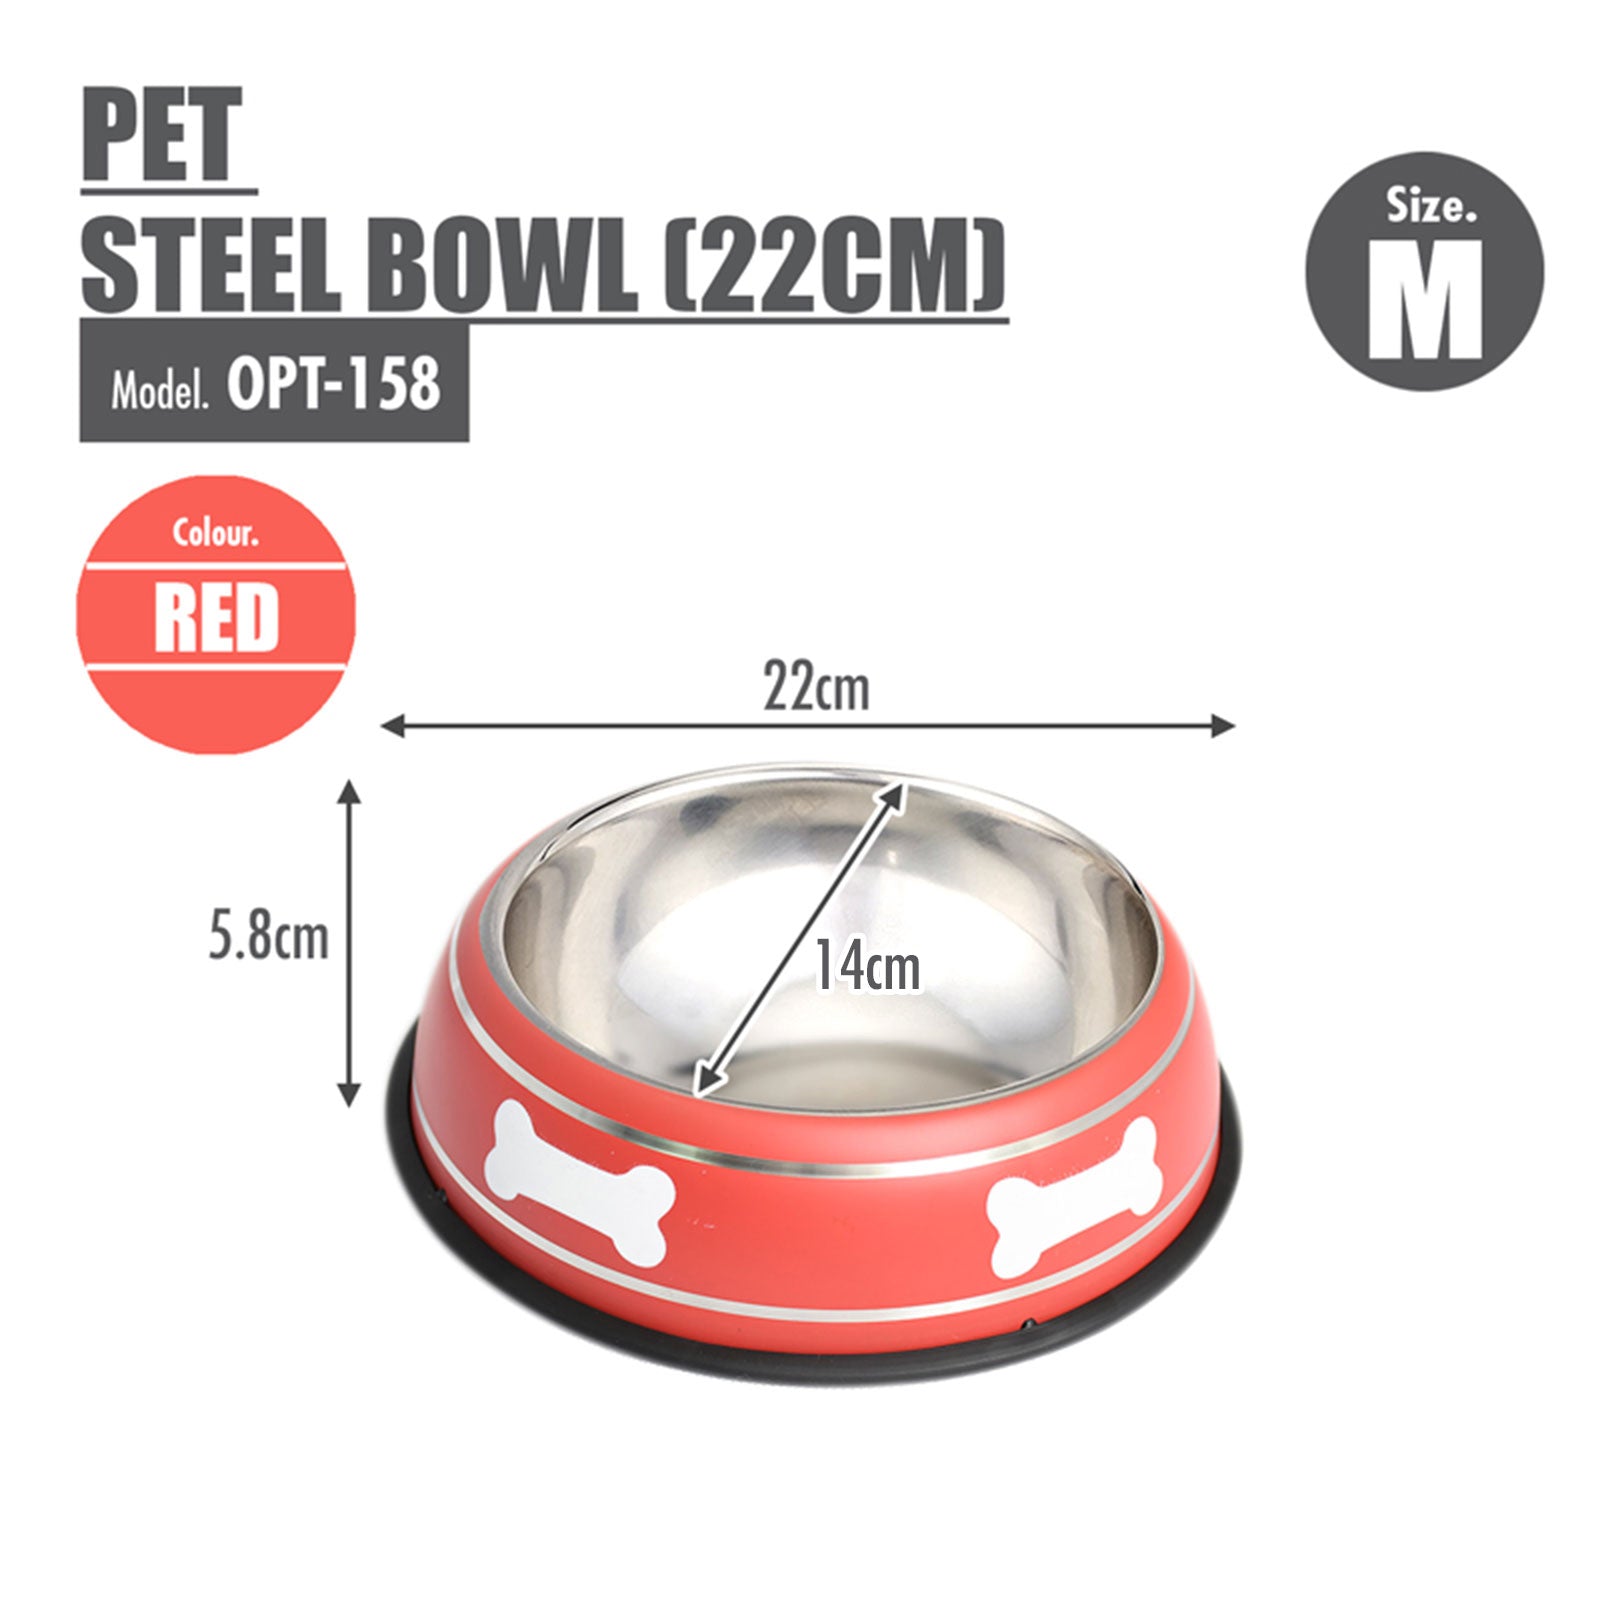 Pet Steel Bowl (22cm/Medium) - Red